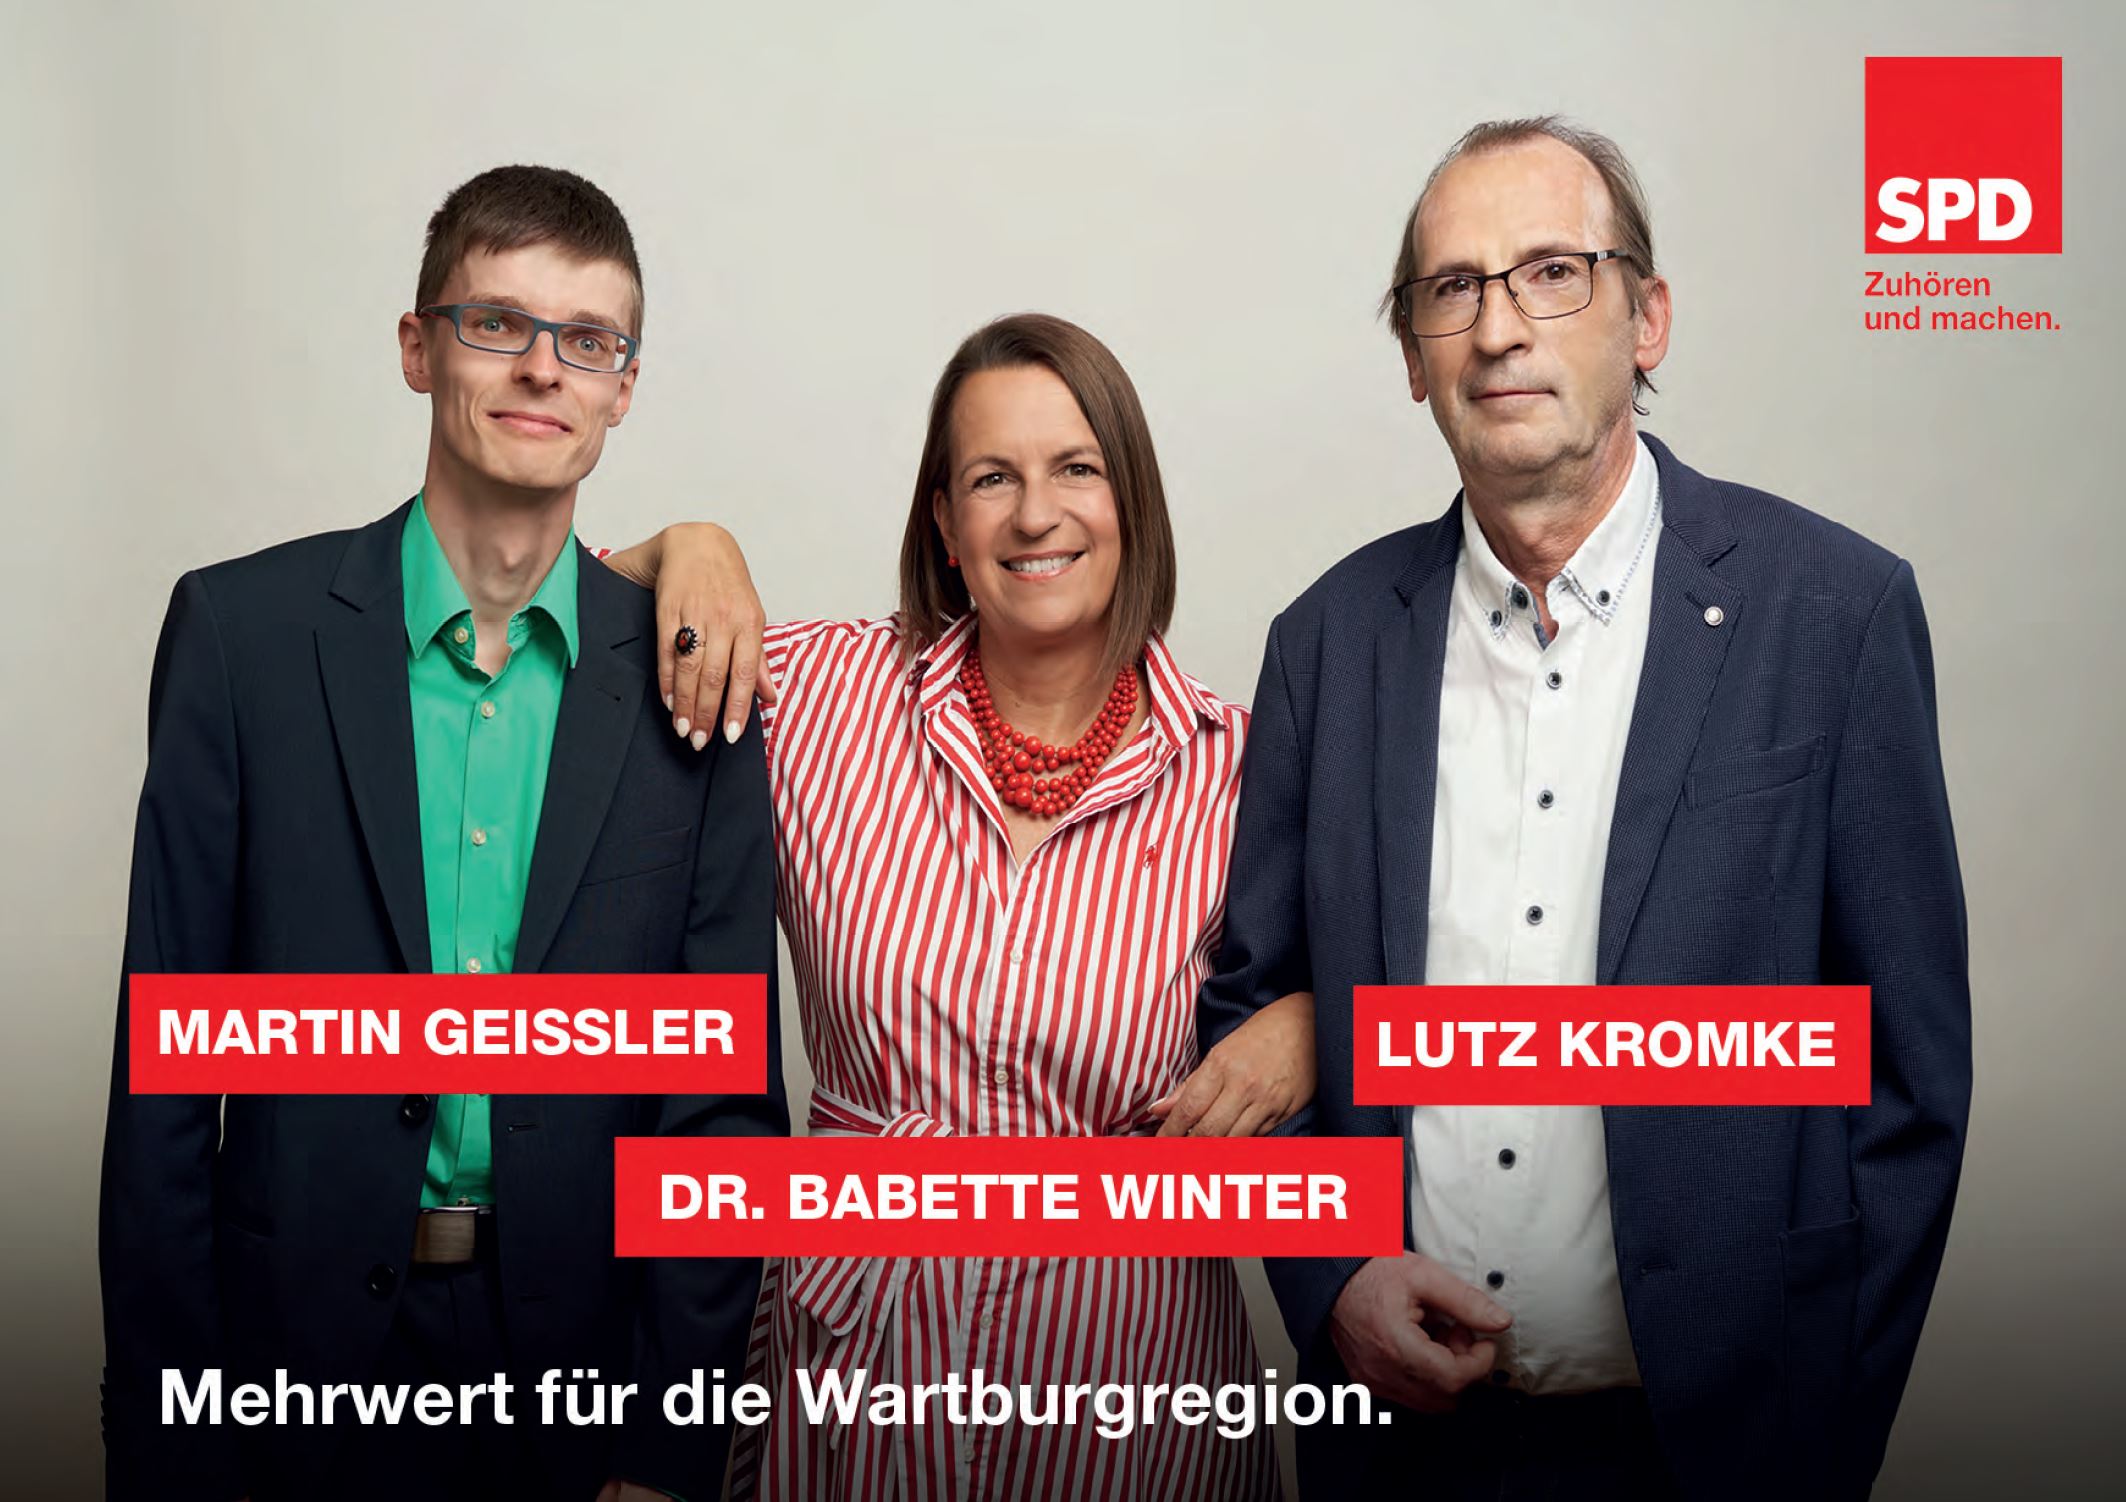 Eine starke SPD für ein starkes Thüringen! Am 27. Oktober SPD wählen!